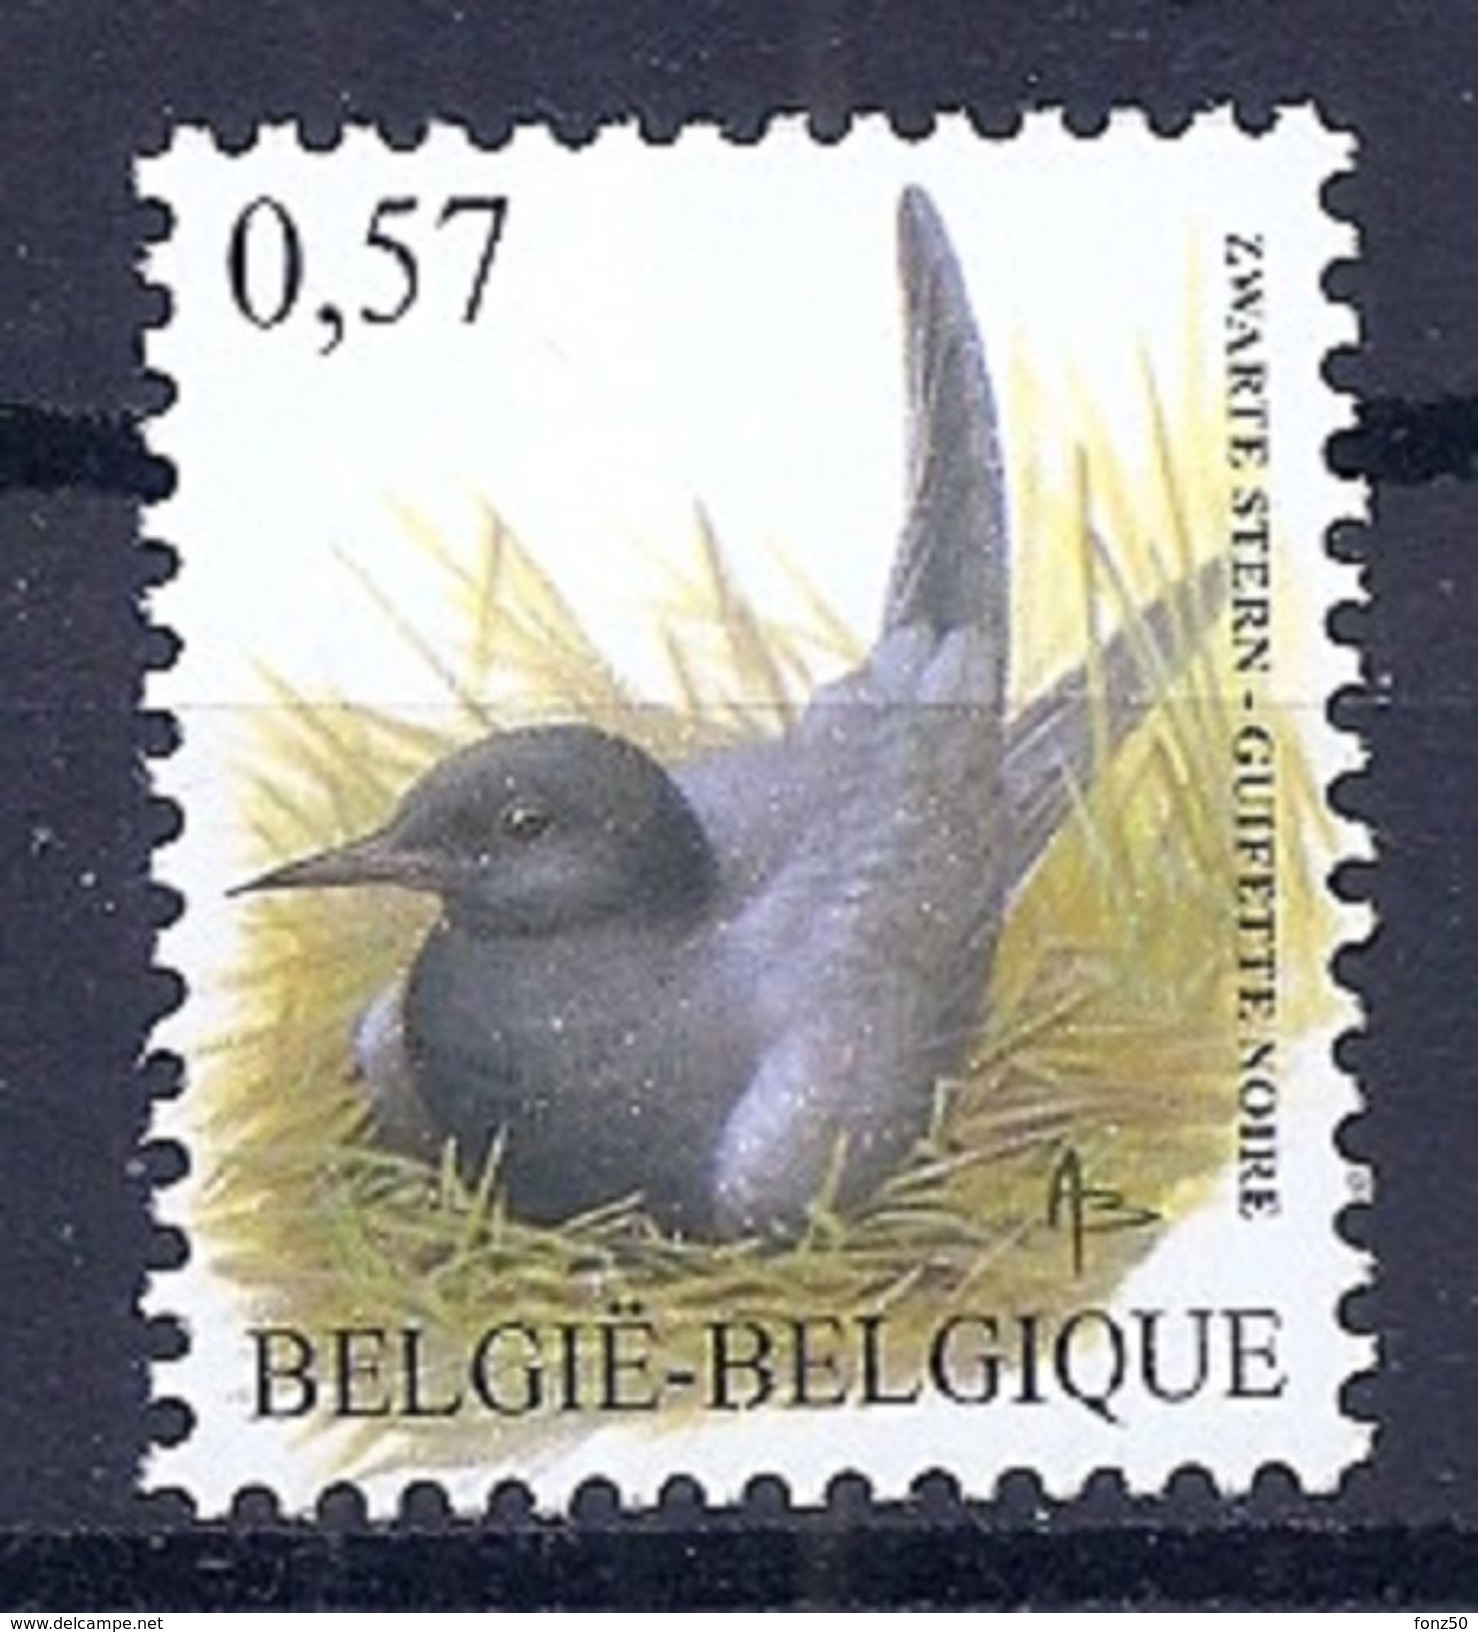 BELGIE * Buzin * Nr 3136 * Postfris Xx * FLUOR  PAPIER - 1985-.. Oiseaux (Buzin)